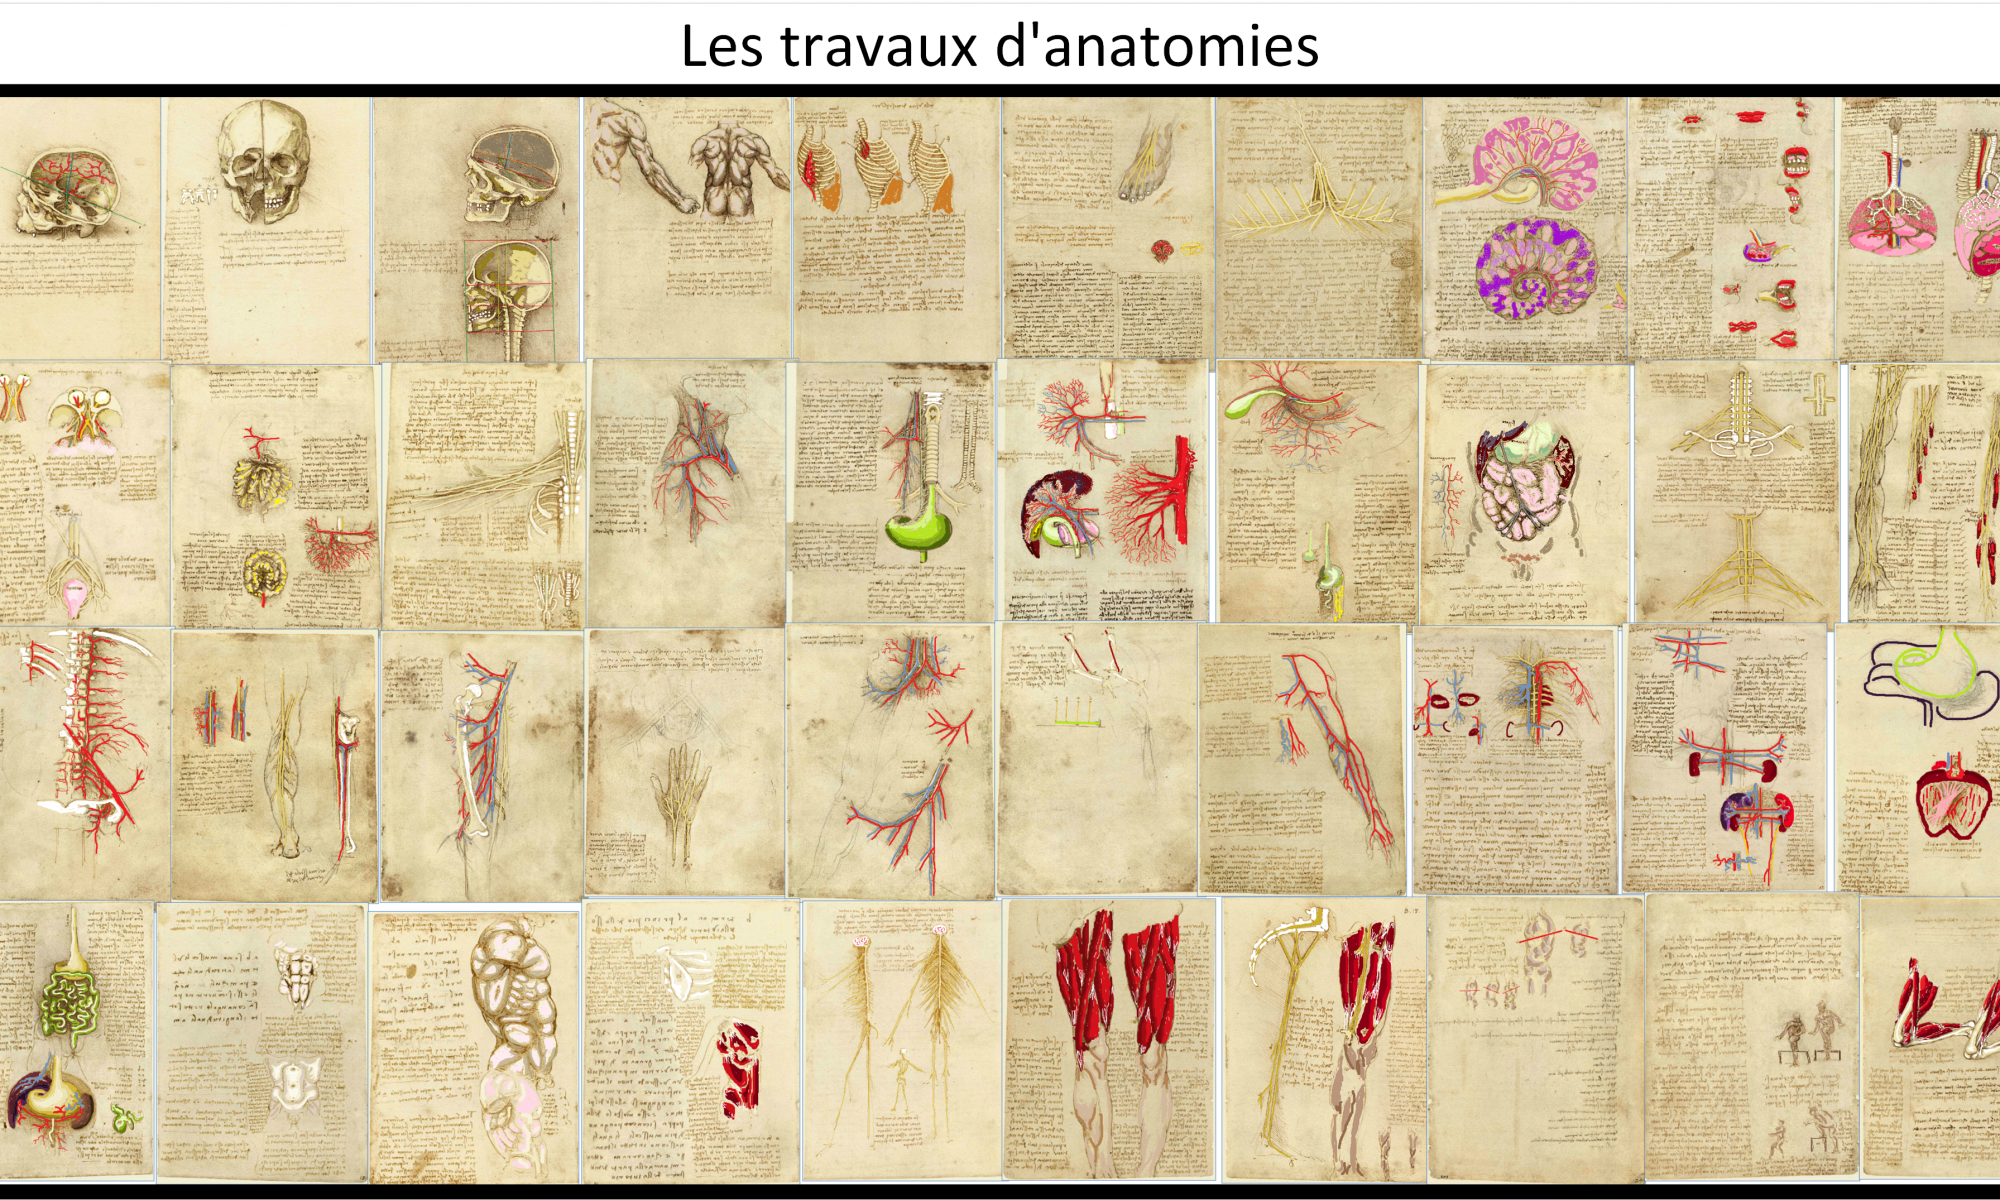 Les travaux d'anatomie de Léonard de Vinci